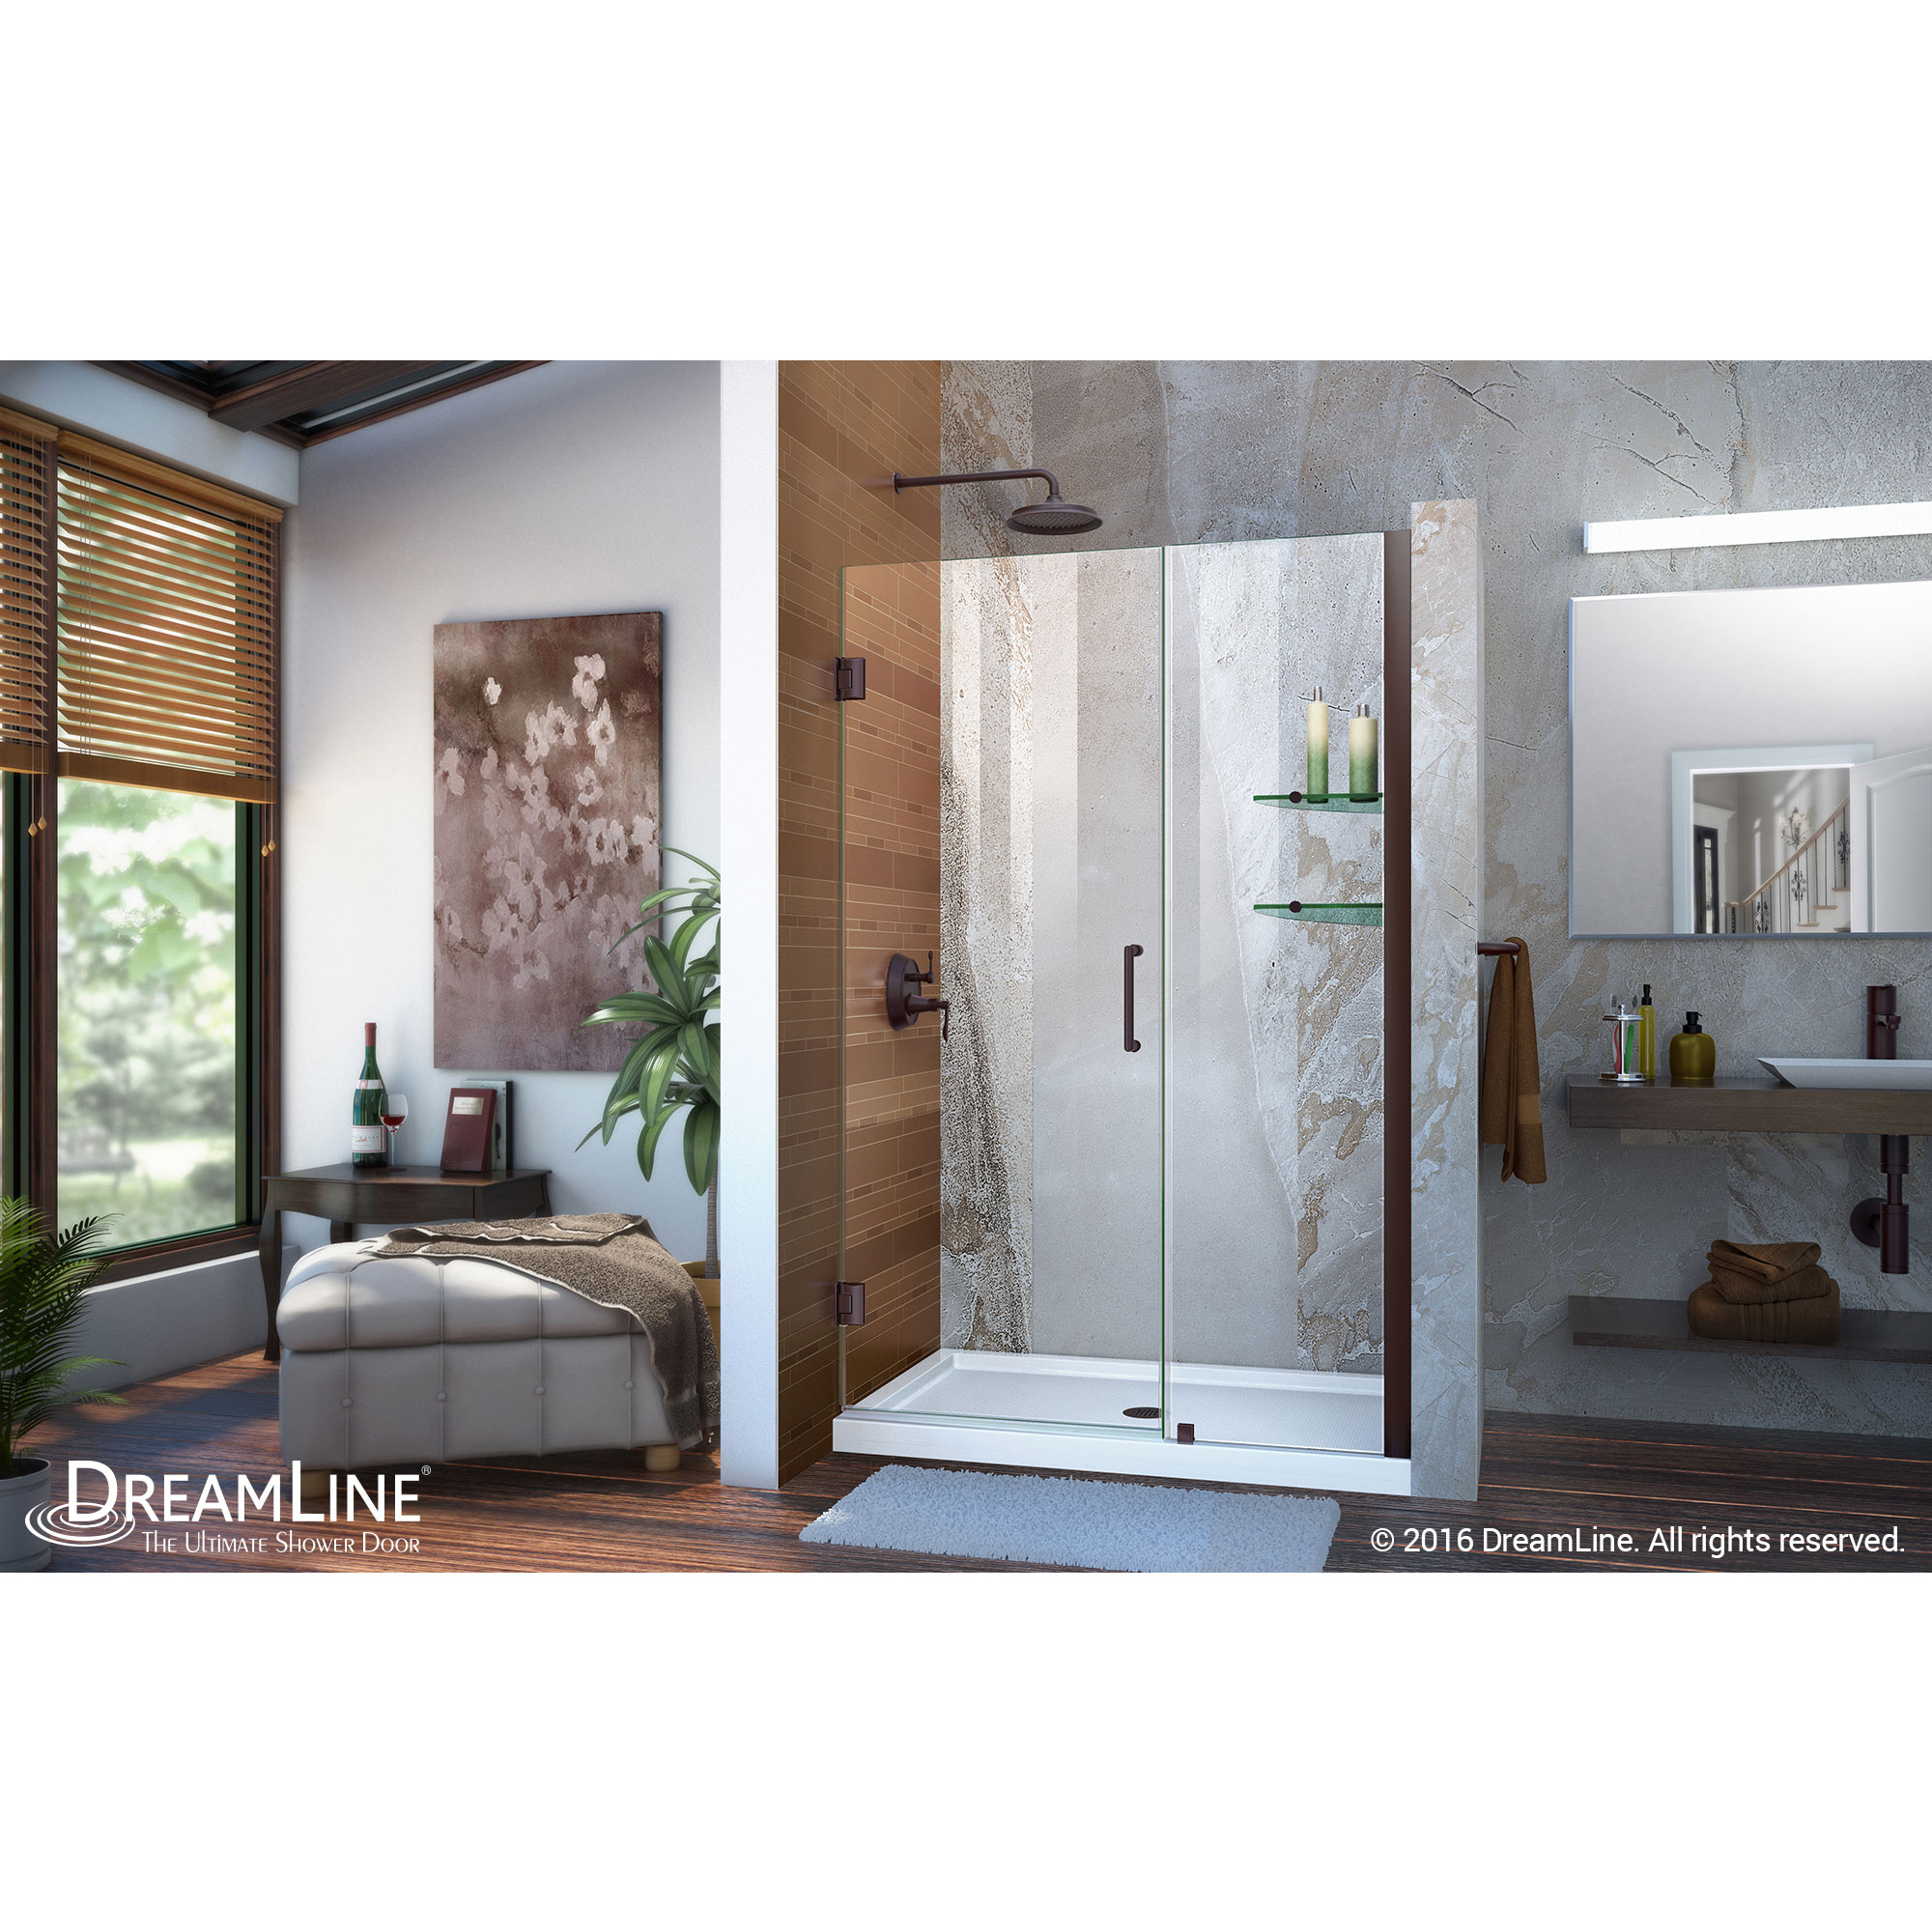 Unidoor 44 to 45" Frameless Hinged Shower Door, Clear 3/8" Glass Door, Oil Rubbed Bronze